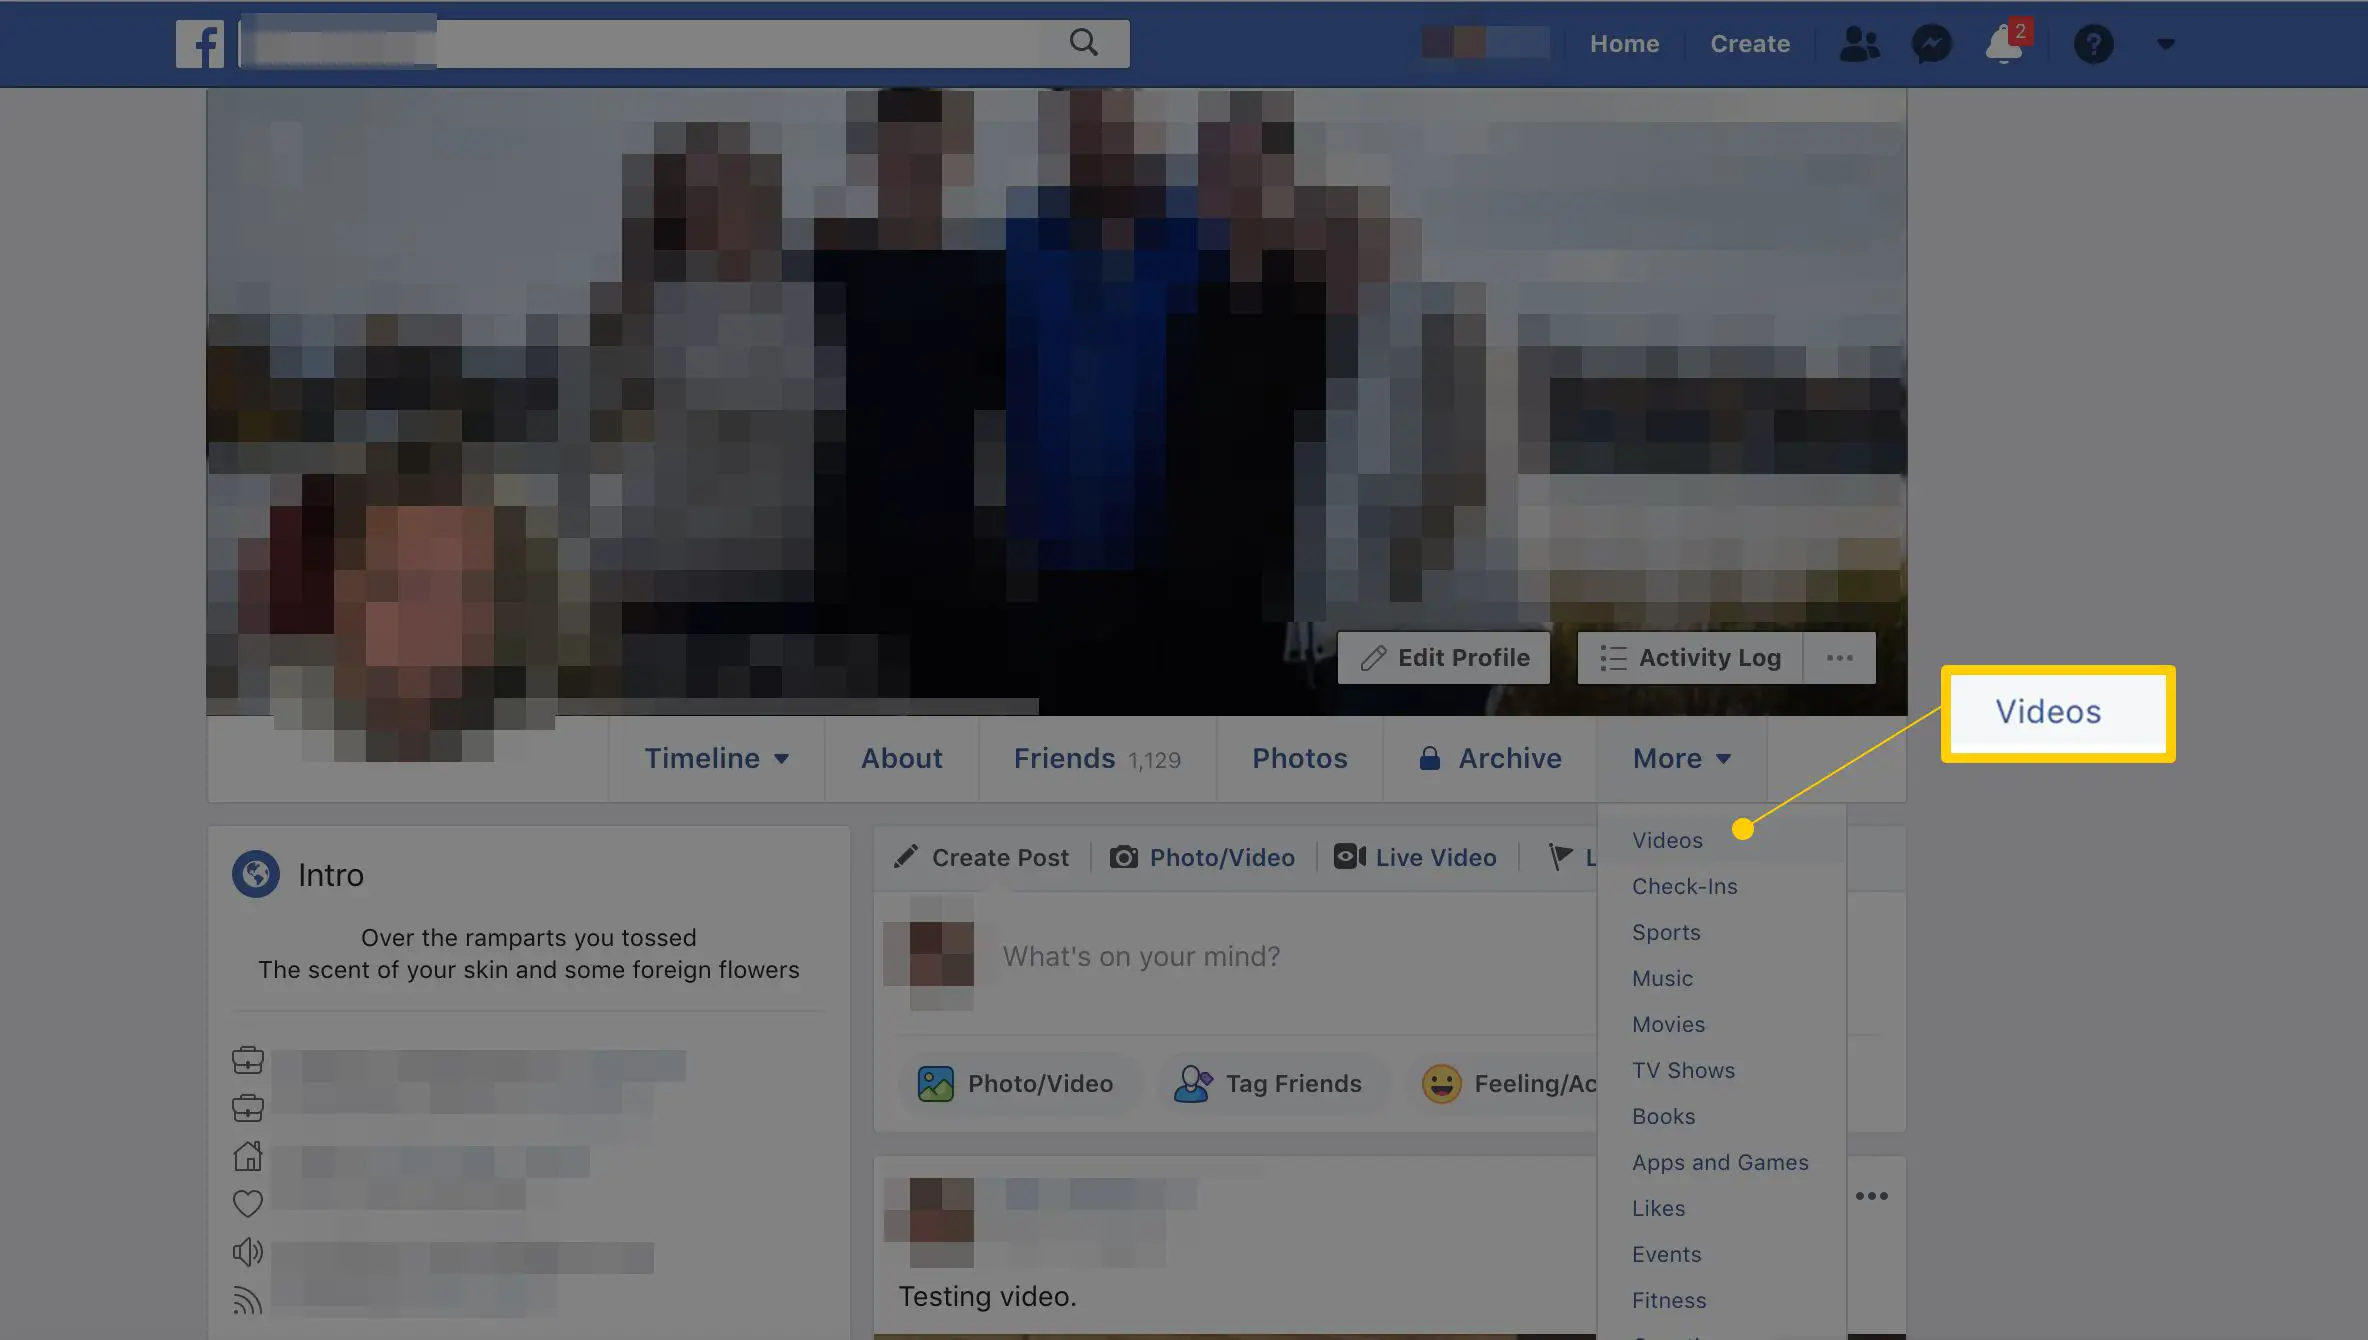 Item de menu de vídeo no menu Mais no perfil do Facebook